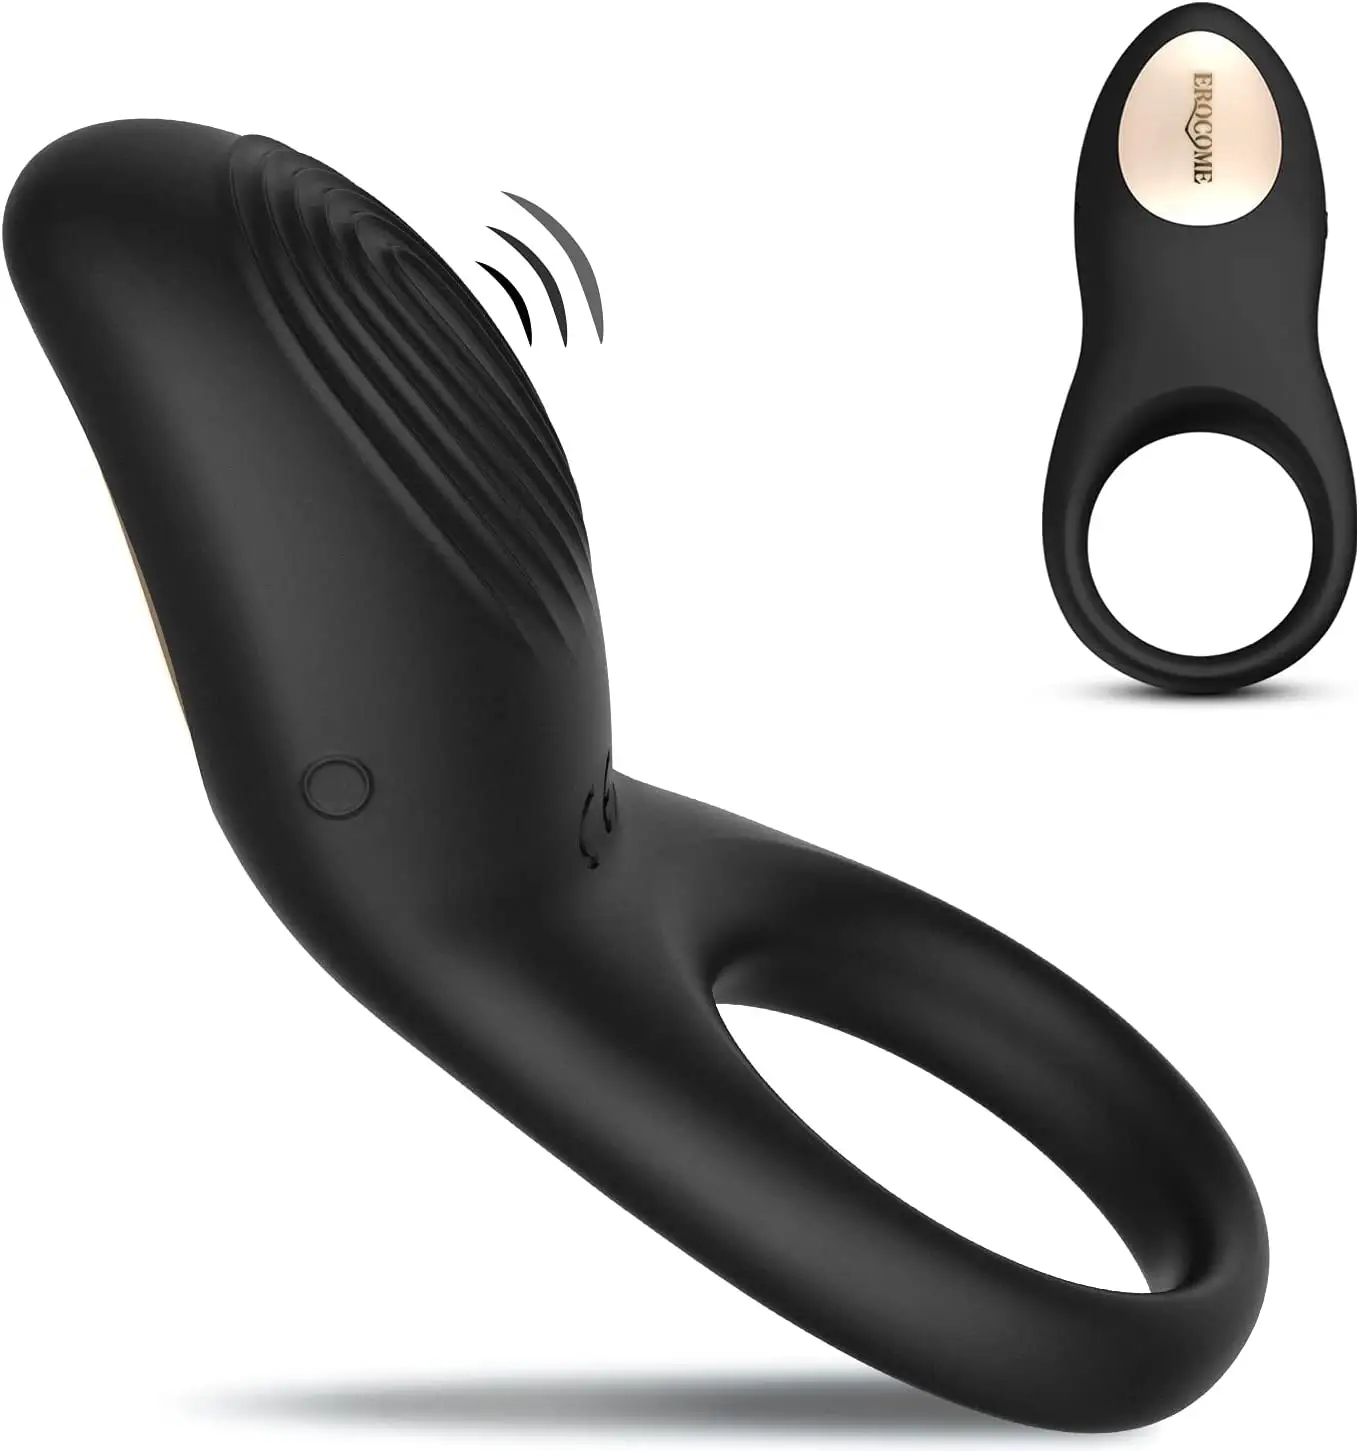 EROCOME tam silikon titreşimli halka-su geçirmez şarj edilebilir Penis halka vibratör 8 modları ile erkek veya çiftler için seks oyuncak